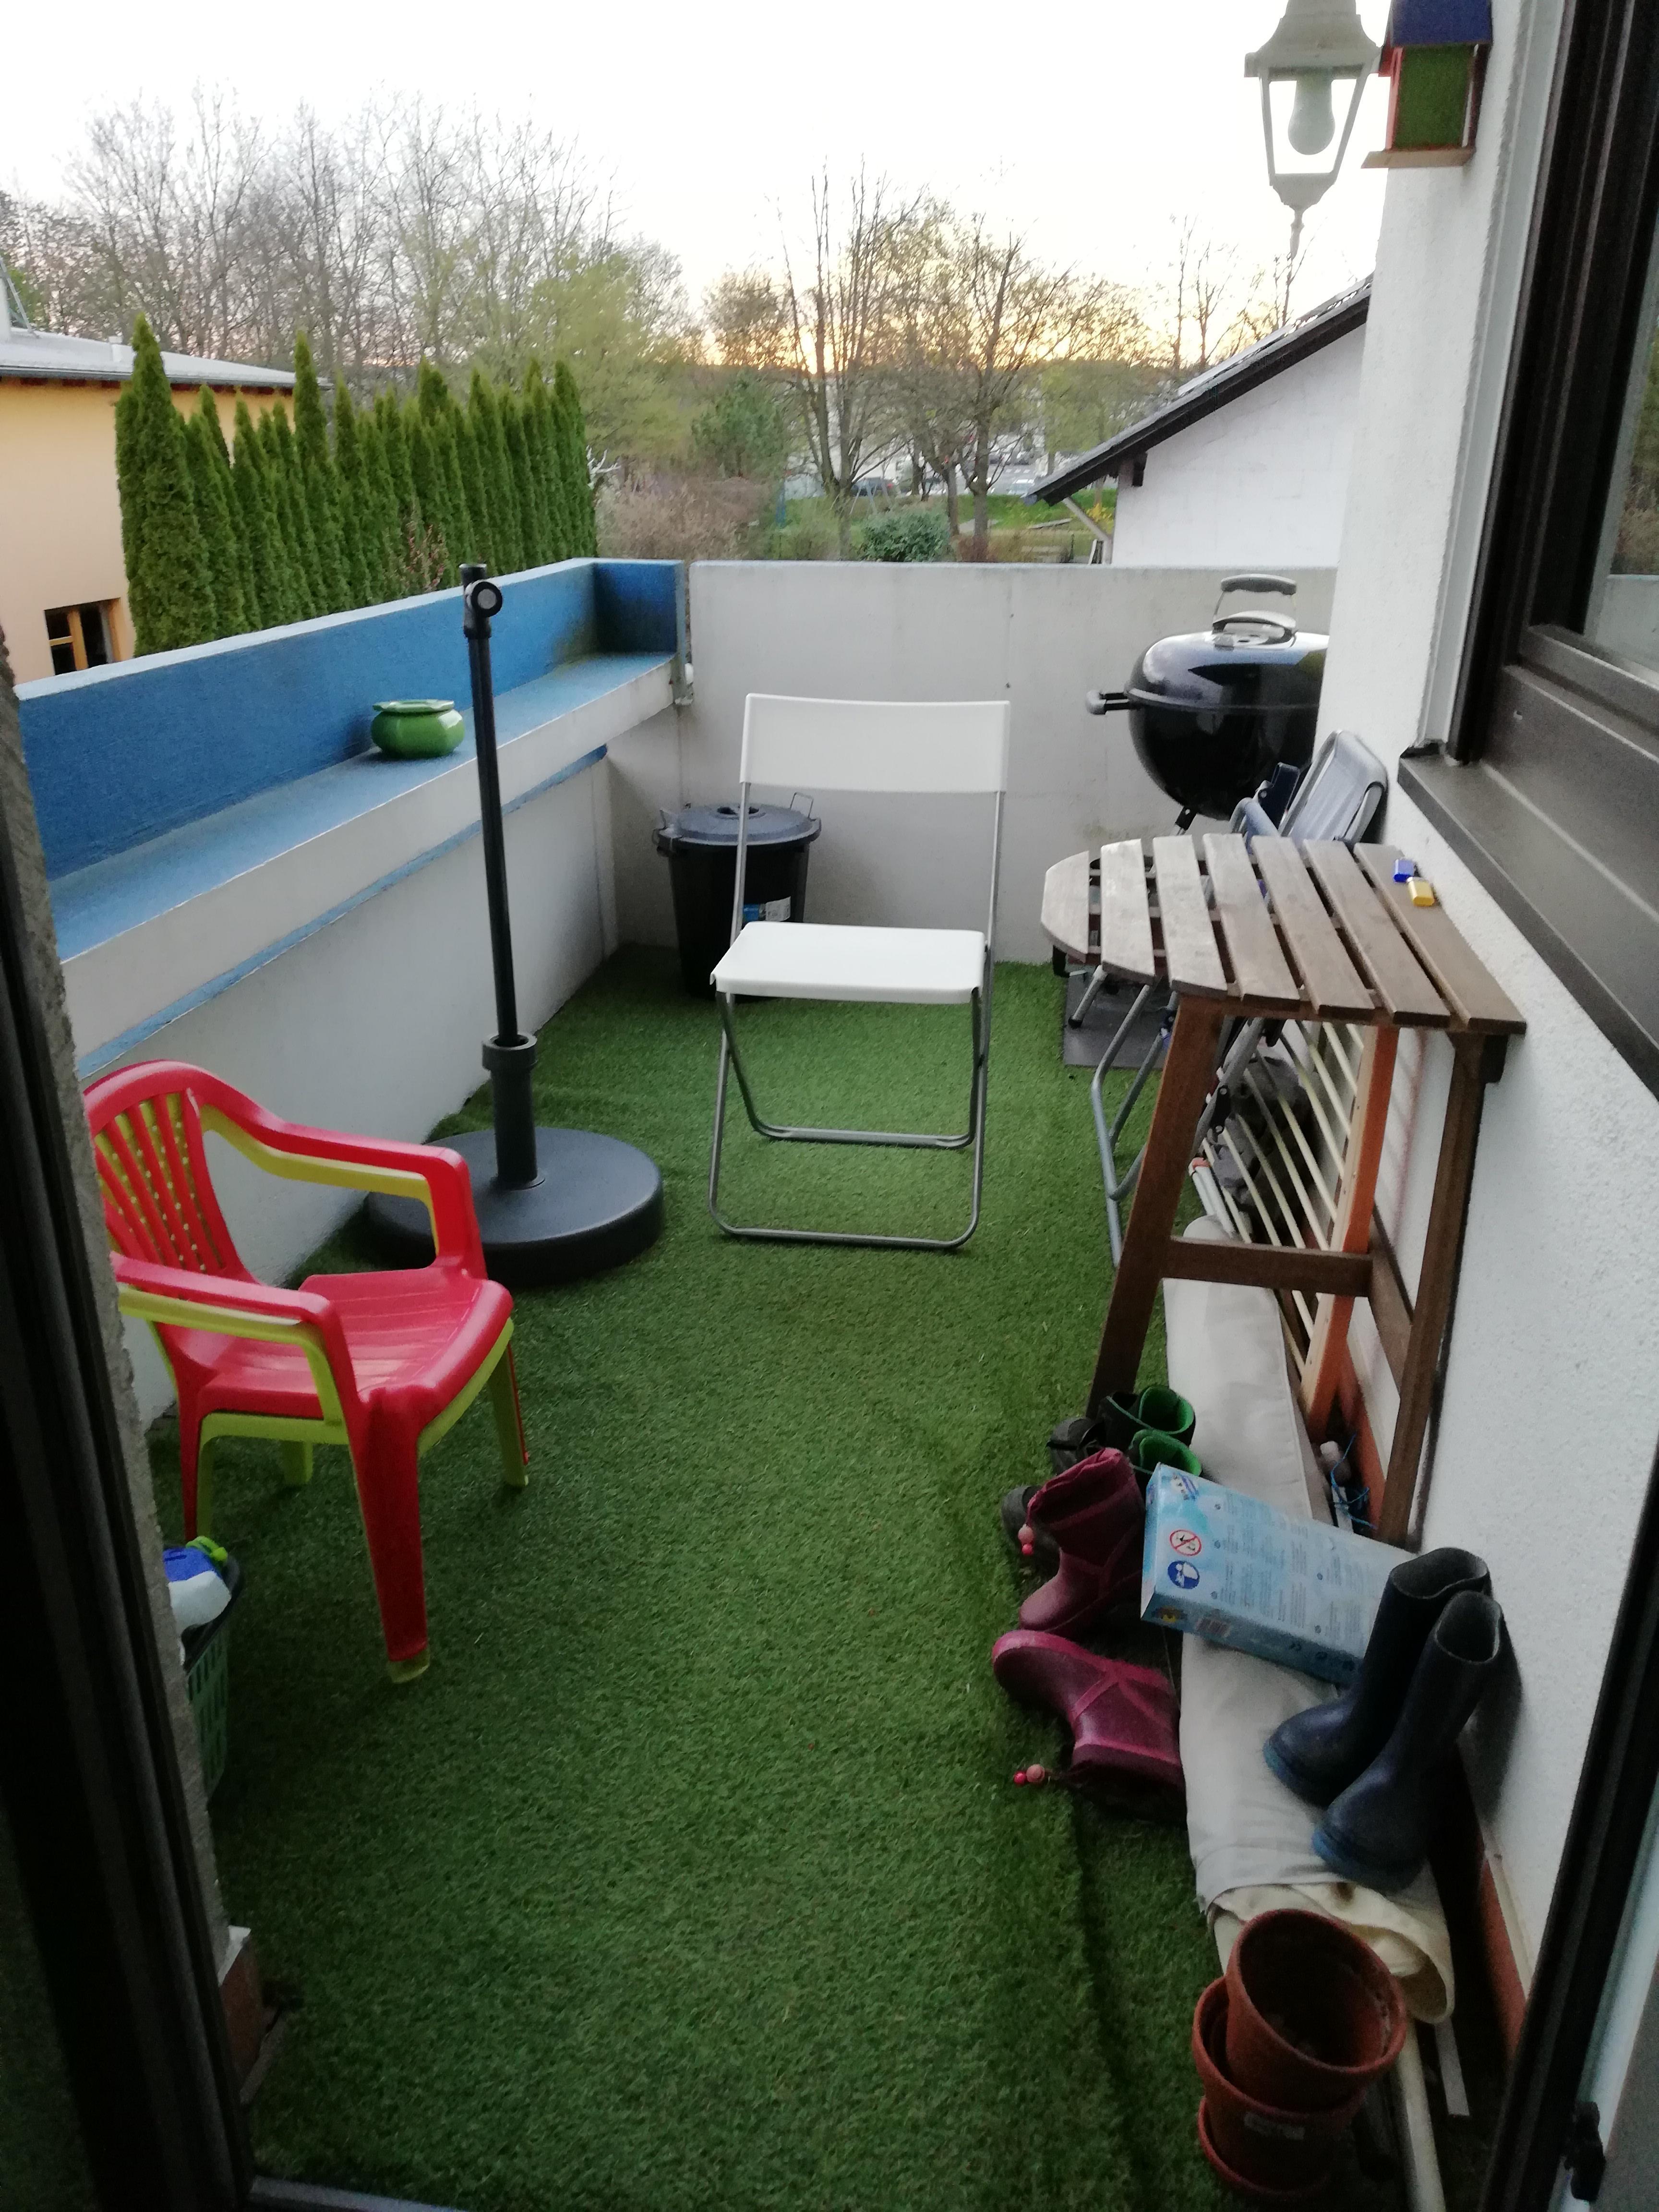 Mein Wunsch: ein Balkon für die Familie. Mit Grill, zwei Sitzplätze, Obstpflanzen und Miniplanschbecken #meinbalkon